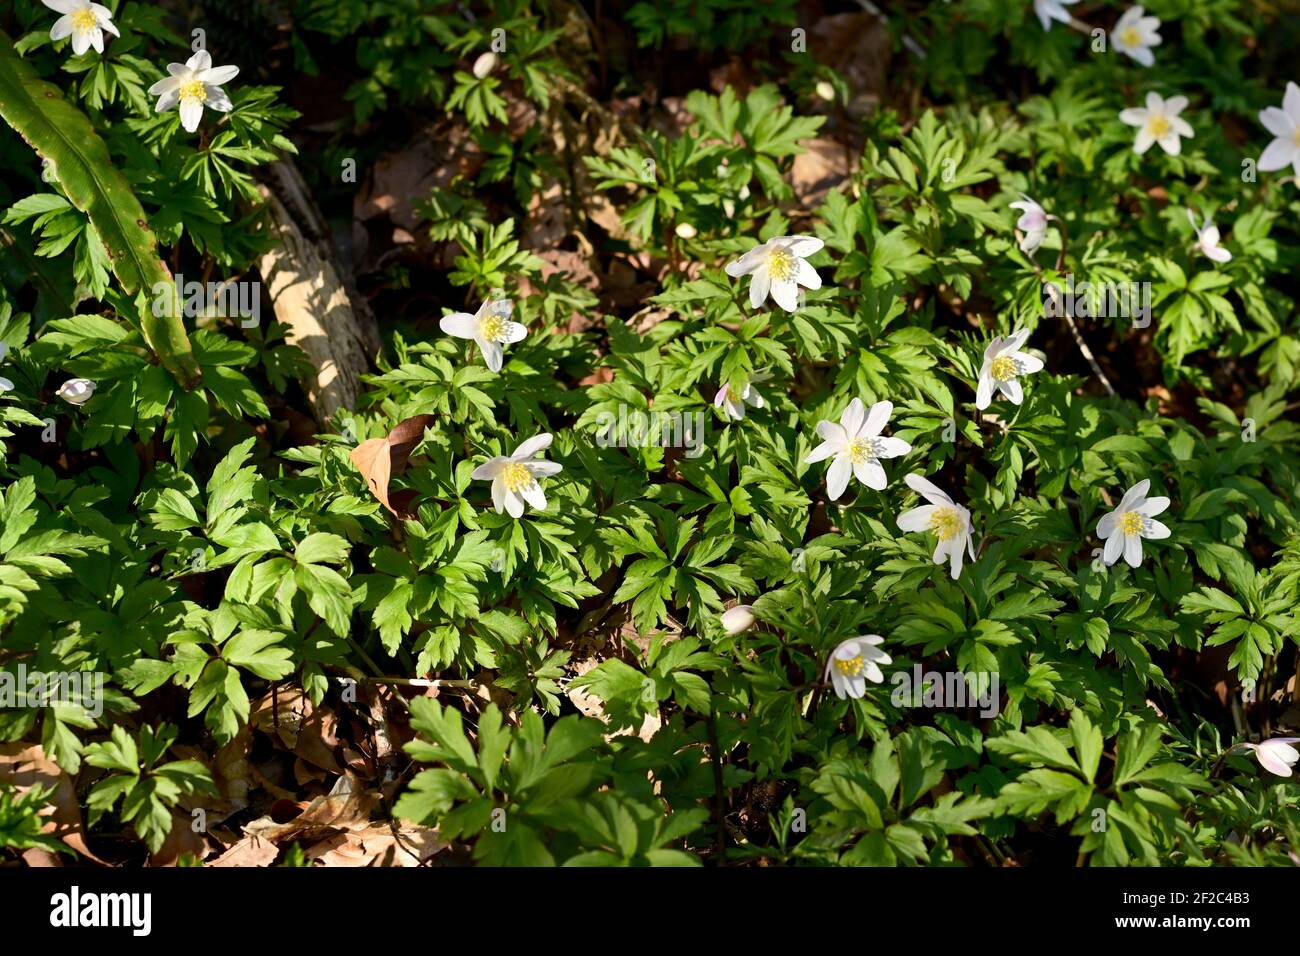 Des anémones sauvages se répandent sur le sol de cette verrière boisée avec leurs fleurs blanches qui brillent sur un tapis de feuillage vert. Banque D'Images